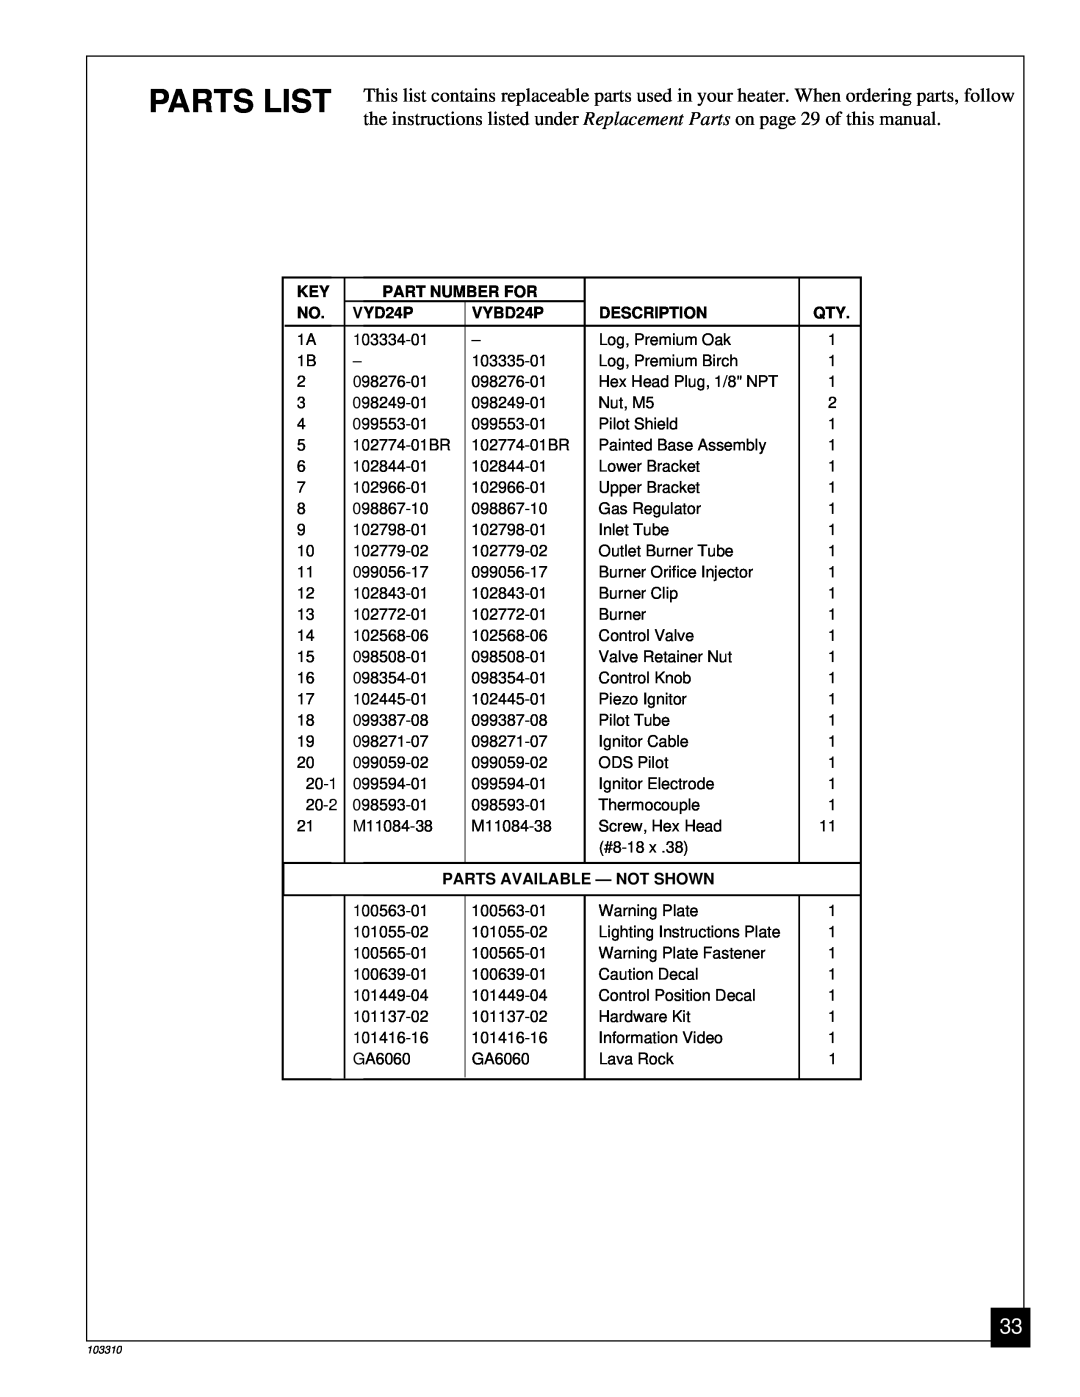 Desa UNVENTED (VENT-FREE) PROPANE/LPGAS LOG HEATER Parts List, Part Number For, VYD24P, VYBD24P, Description 